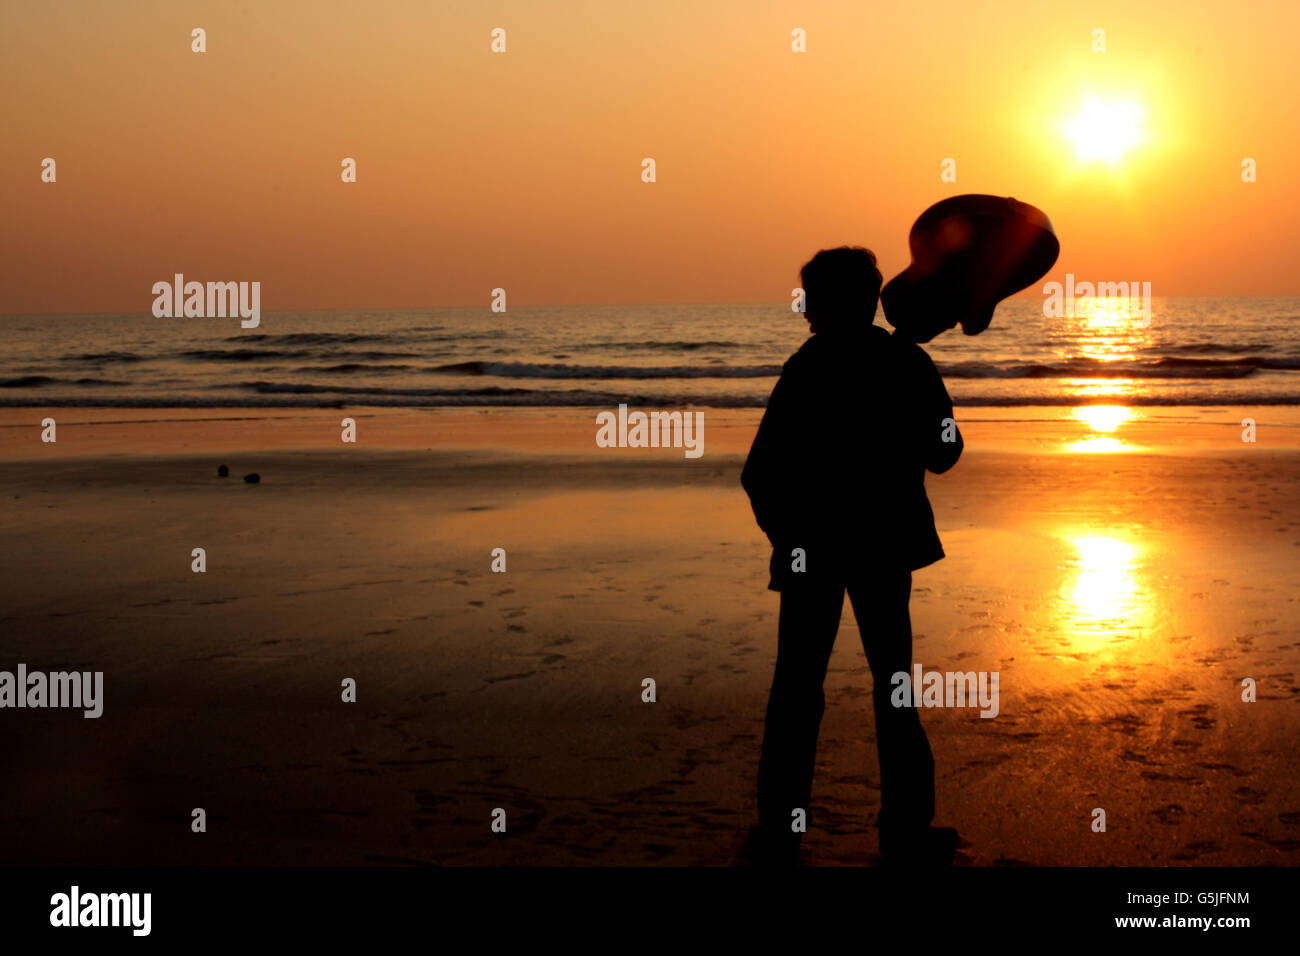 La silhouette d'un guitariste solitaire sur une plage. Banque D'Images